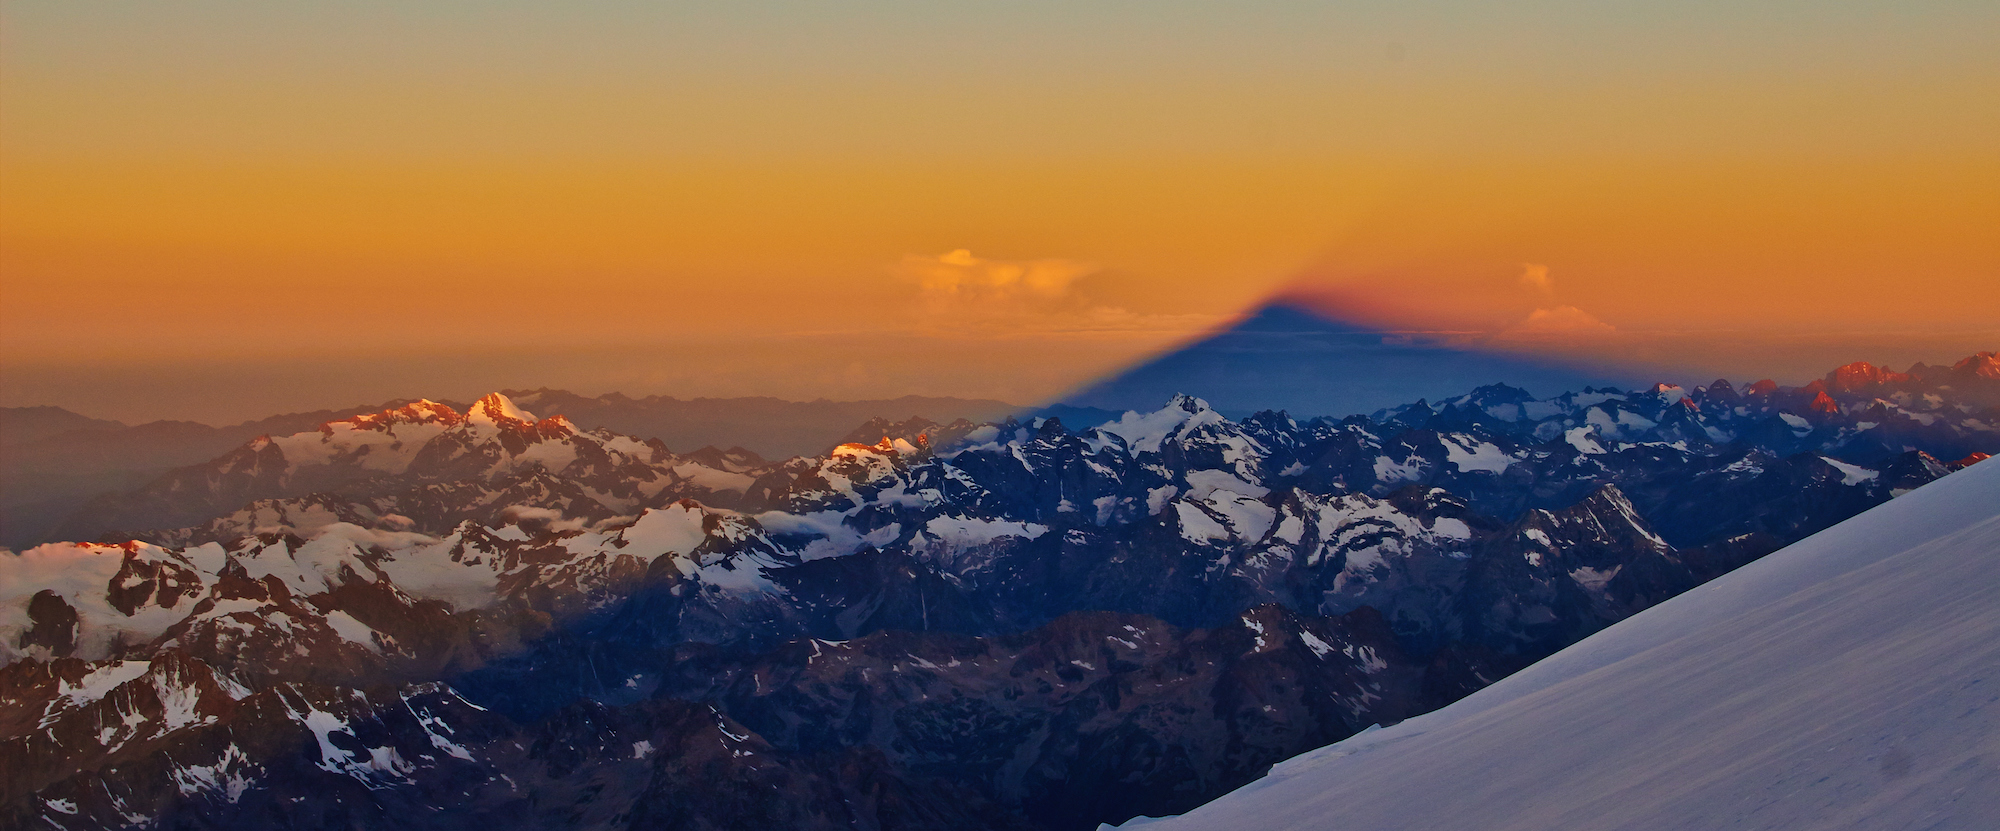 Elbrus Besteigung, Sonnenaufgang beim Aufstieg über die Südseite